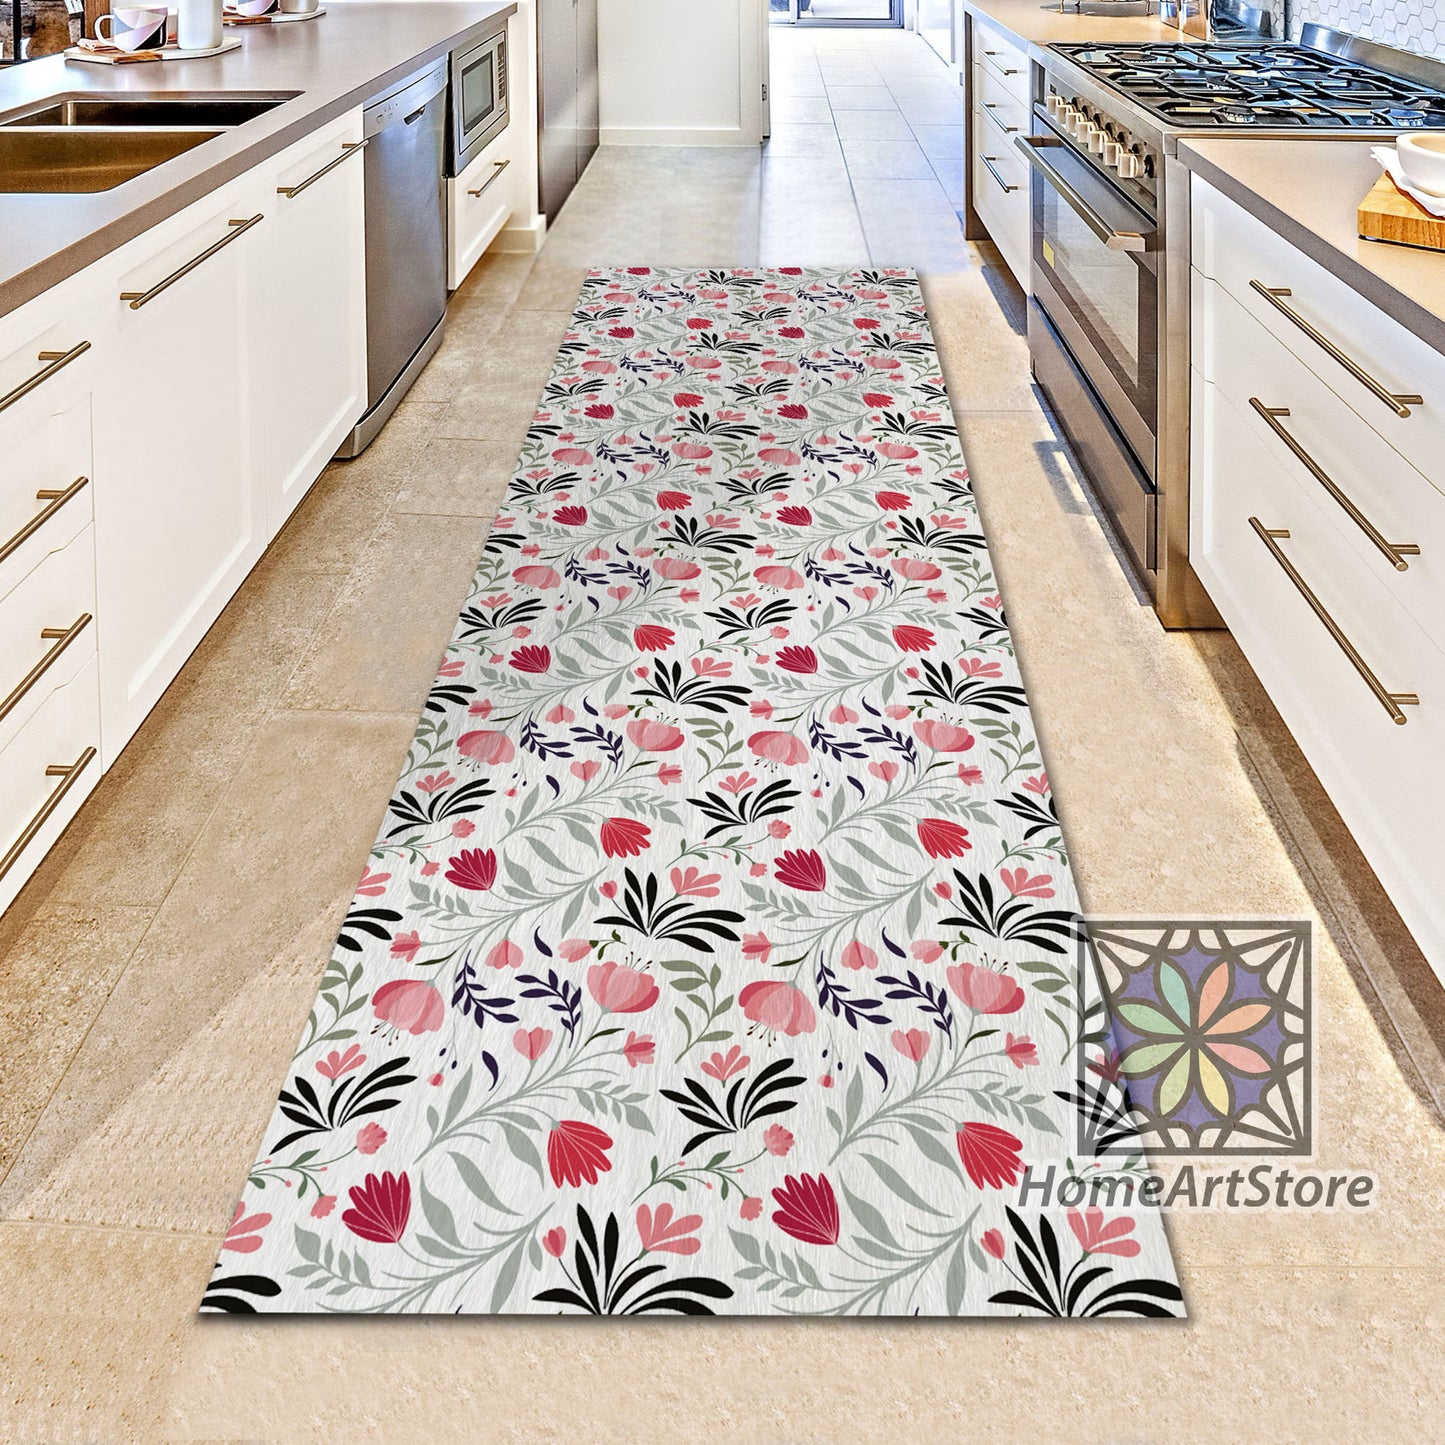 Flowers And Plants Themed Kitchen Runner Rug, Modern Hallway Carpet, Boho Rug, Floral Runner Mat, Boho Decor